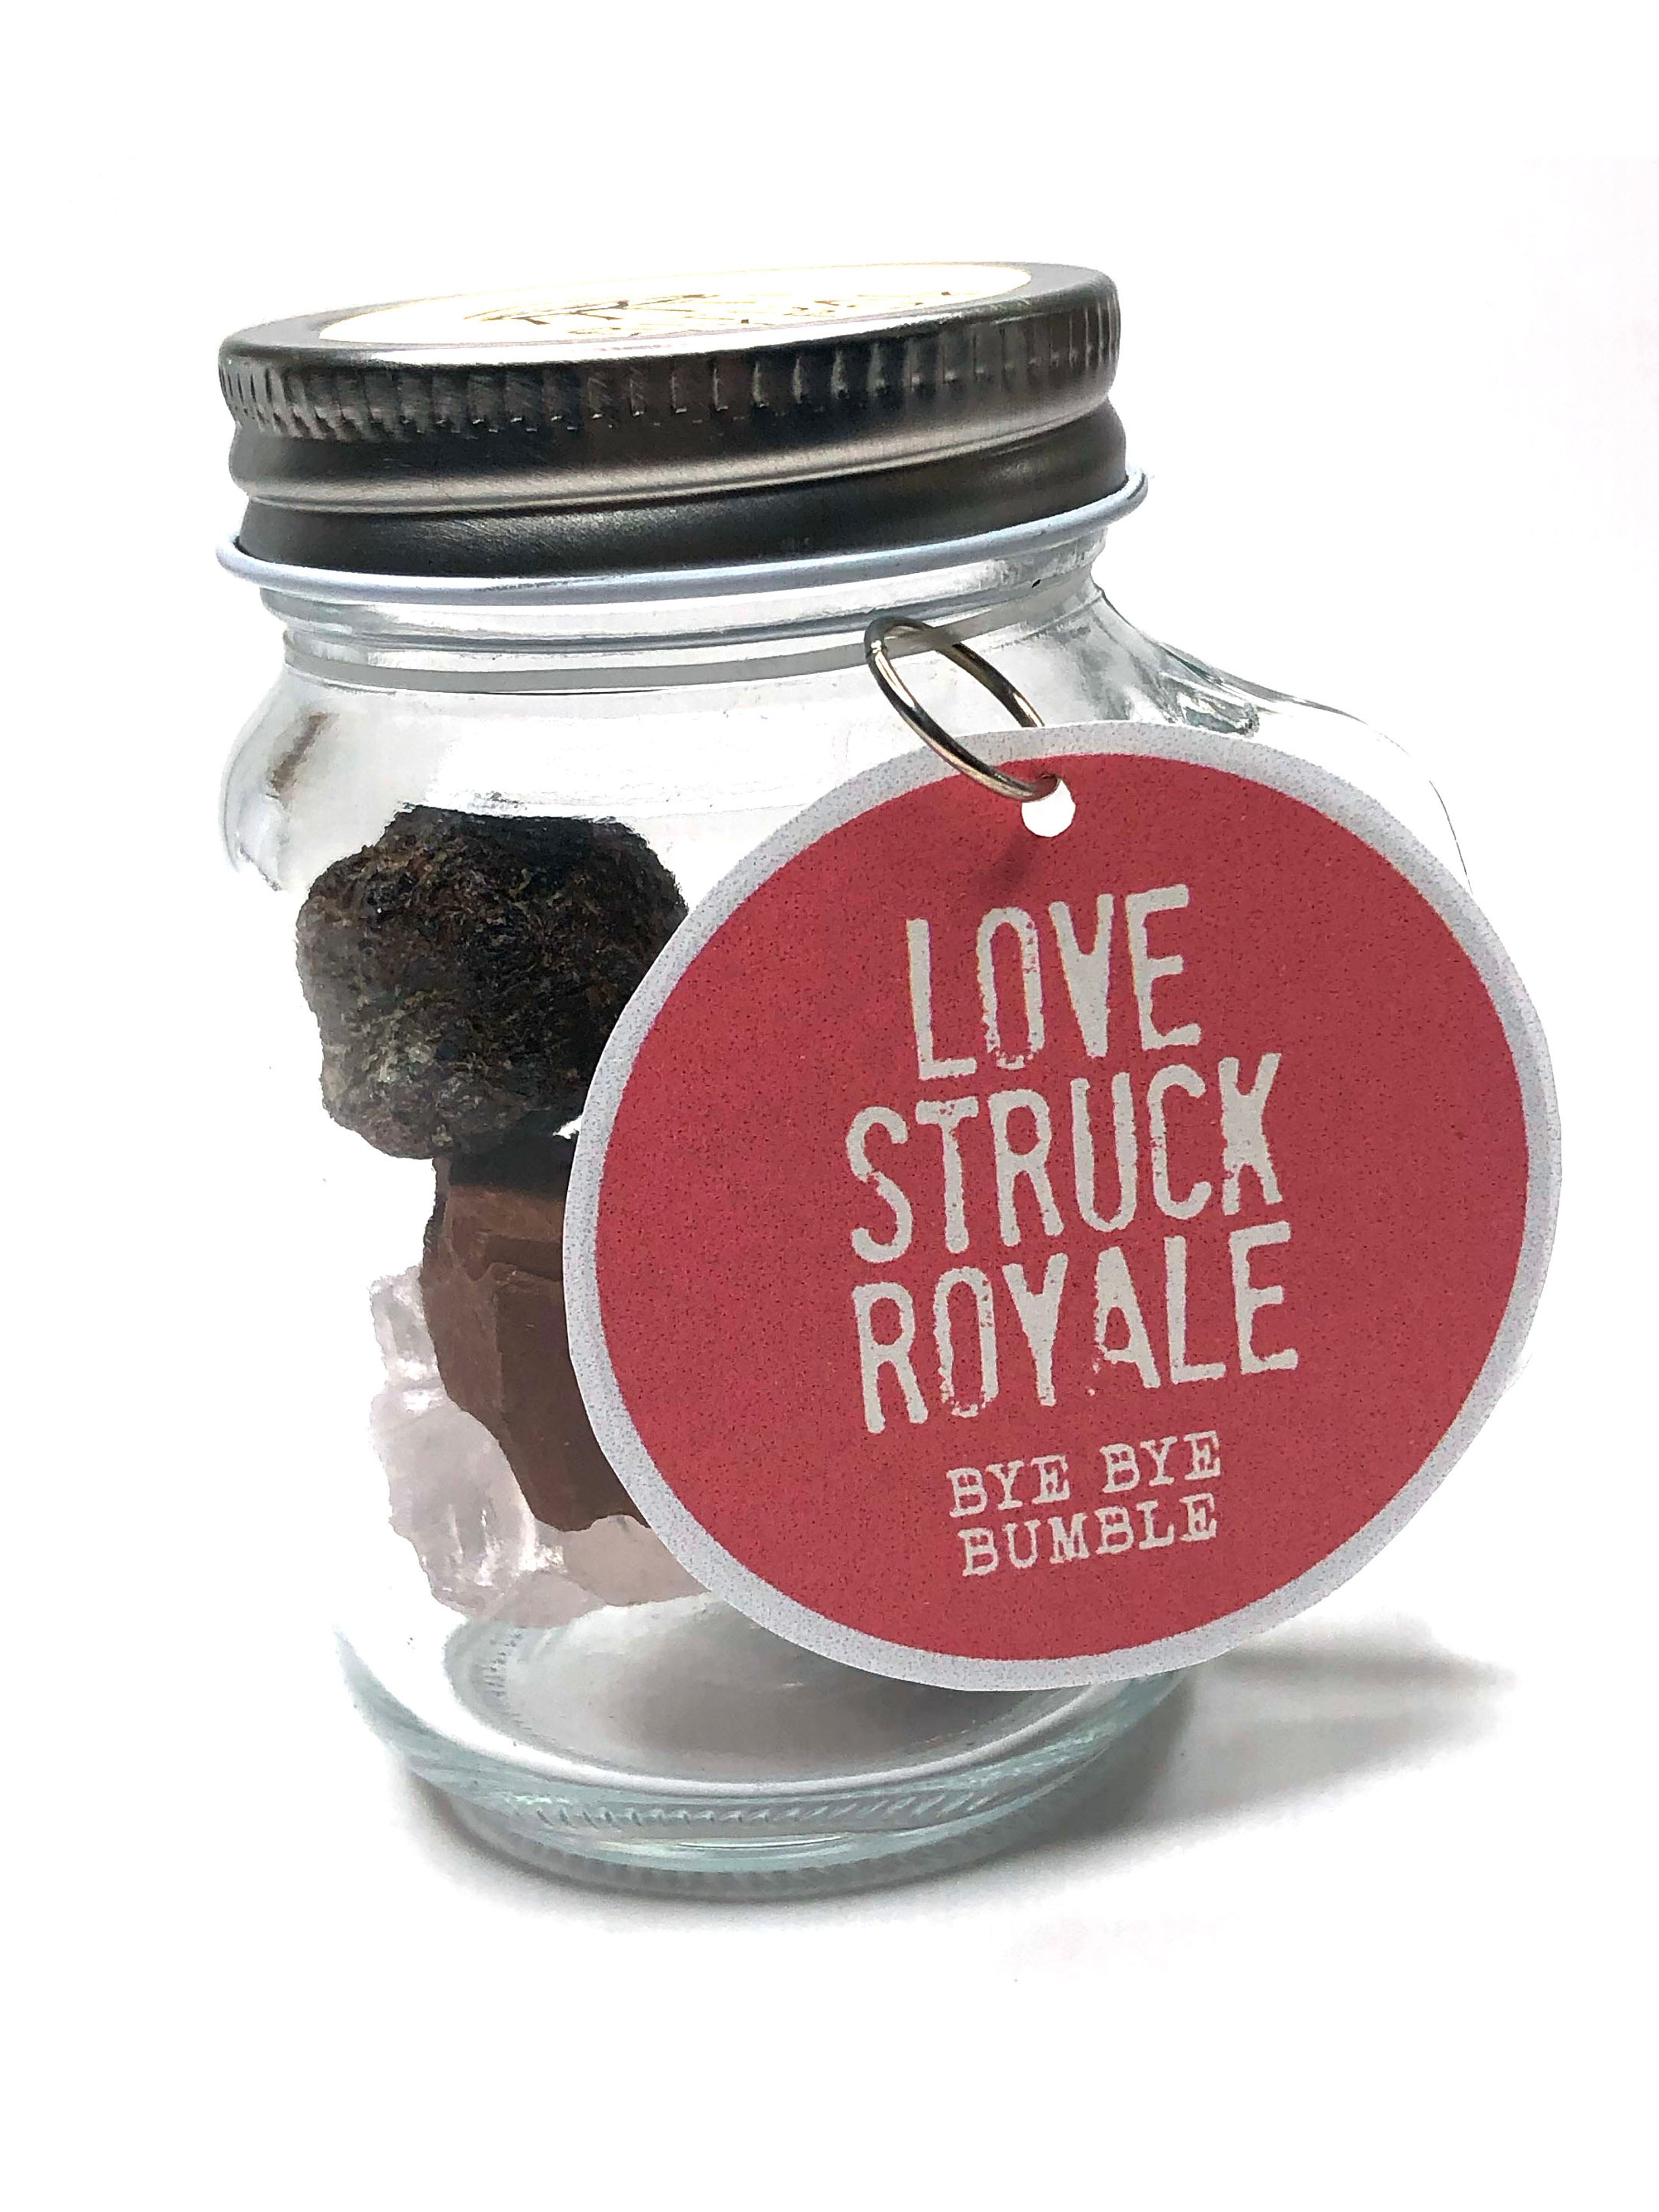 'LOVE STRUCK ROYALE' - Bye, Bye Bumble